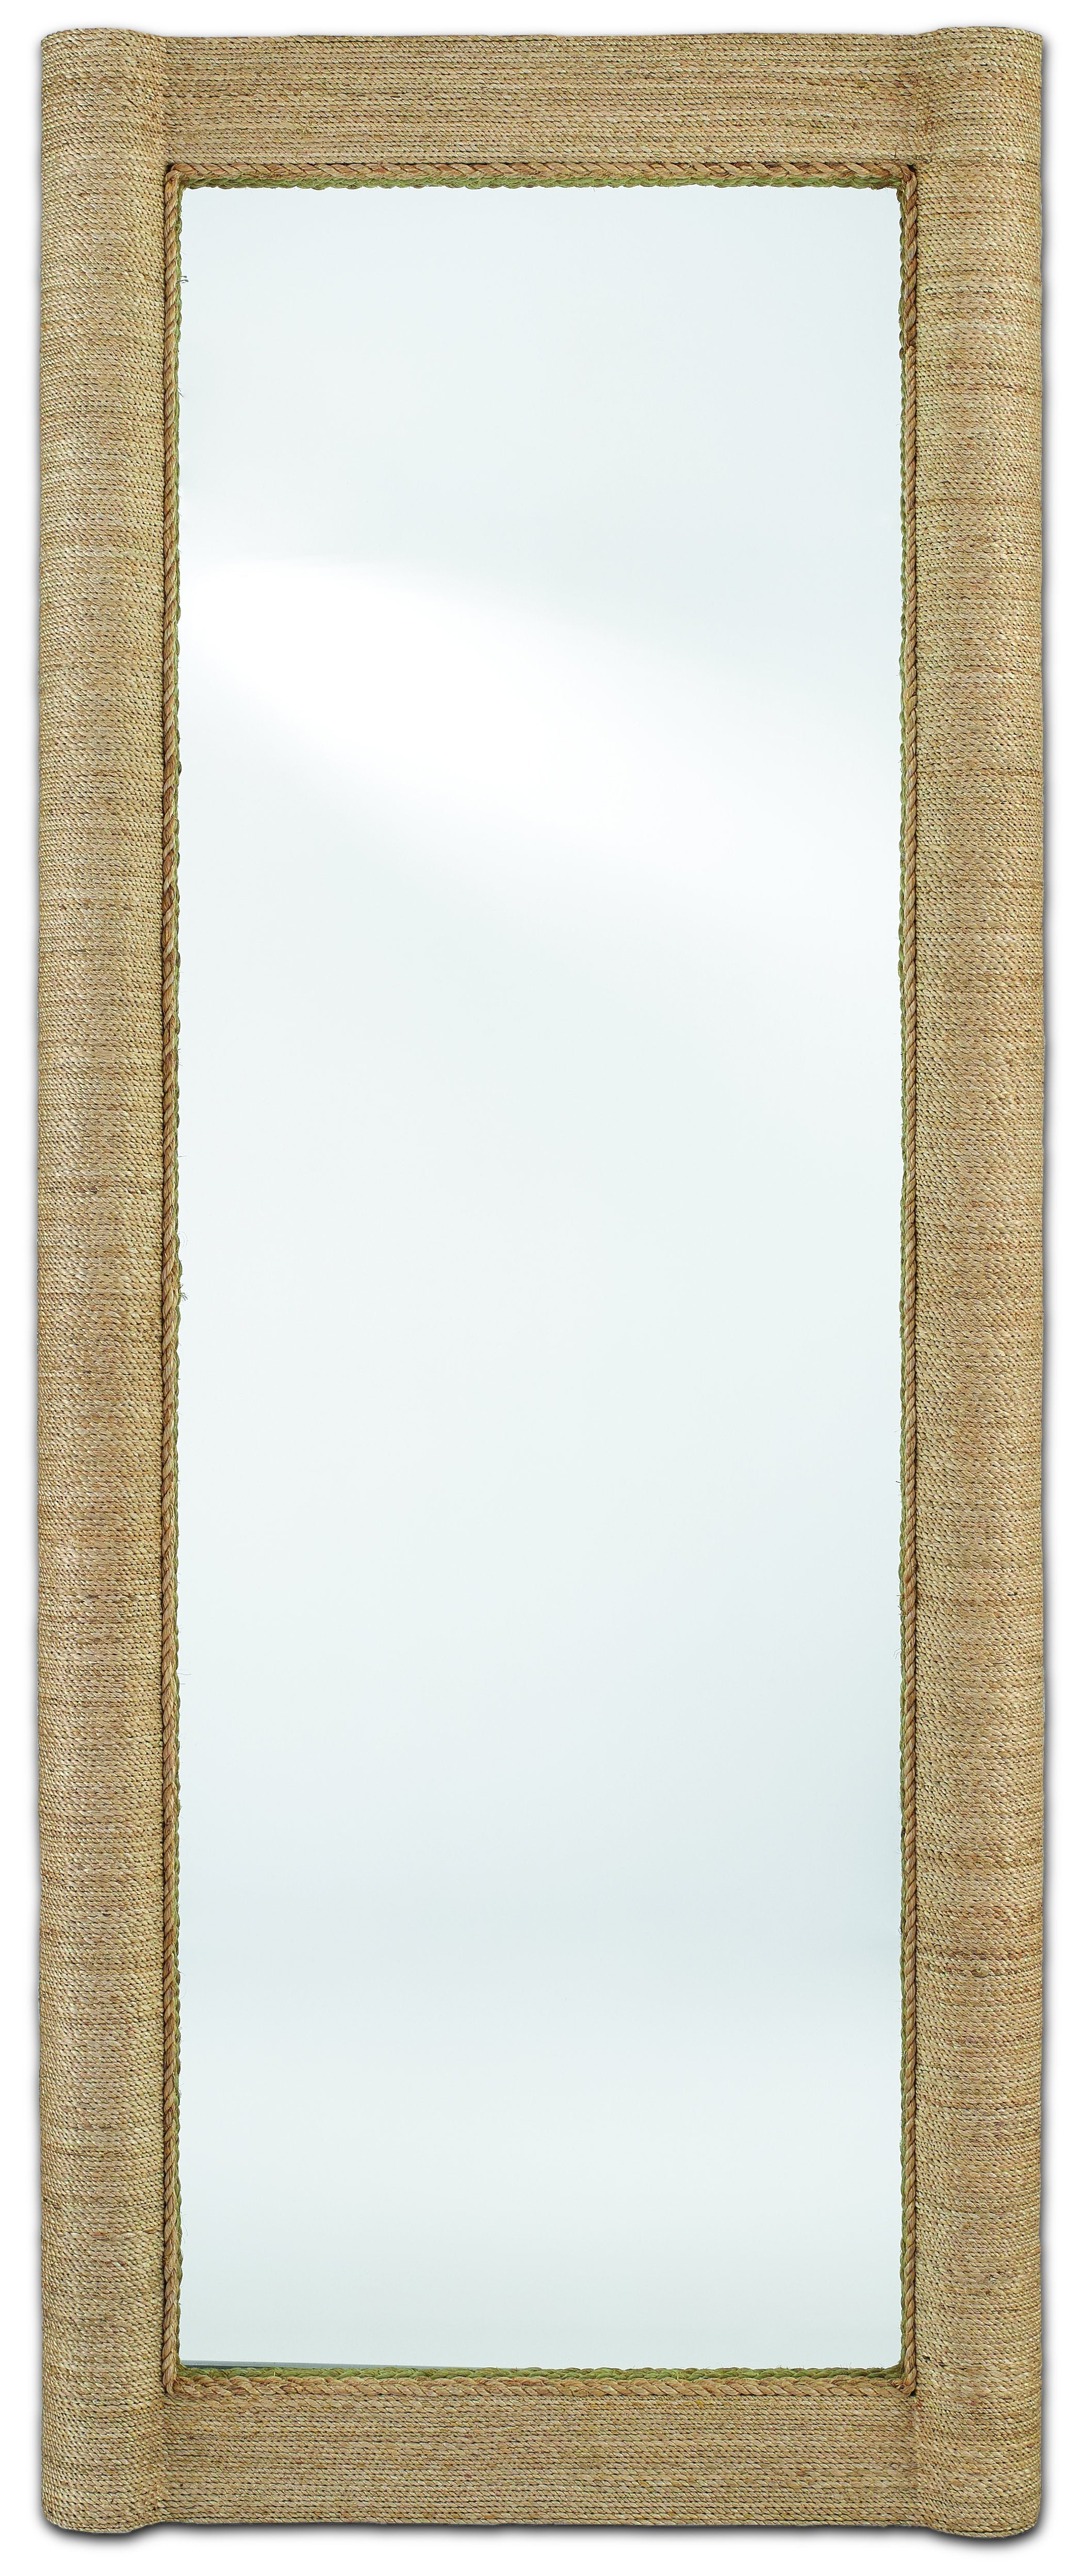 Vilmar Floor Mirror design by Currey and Company